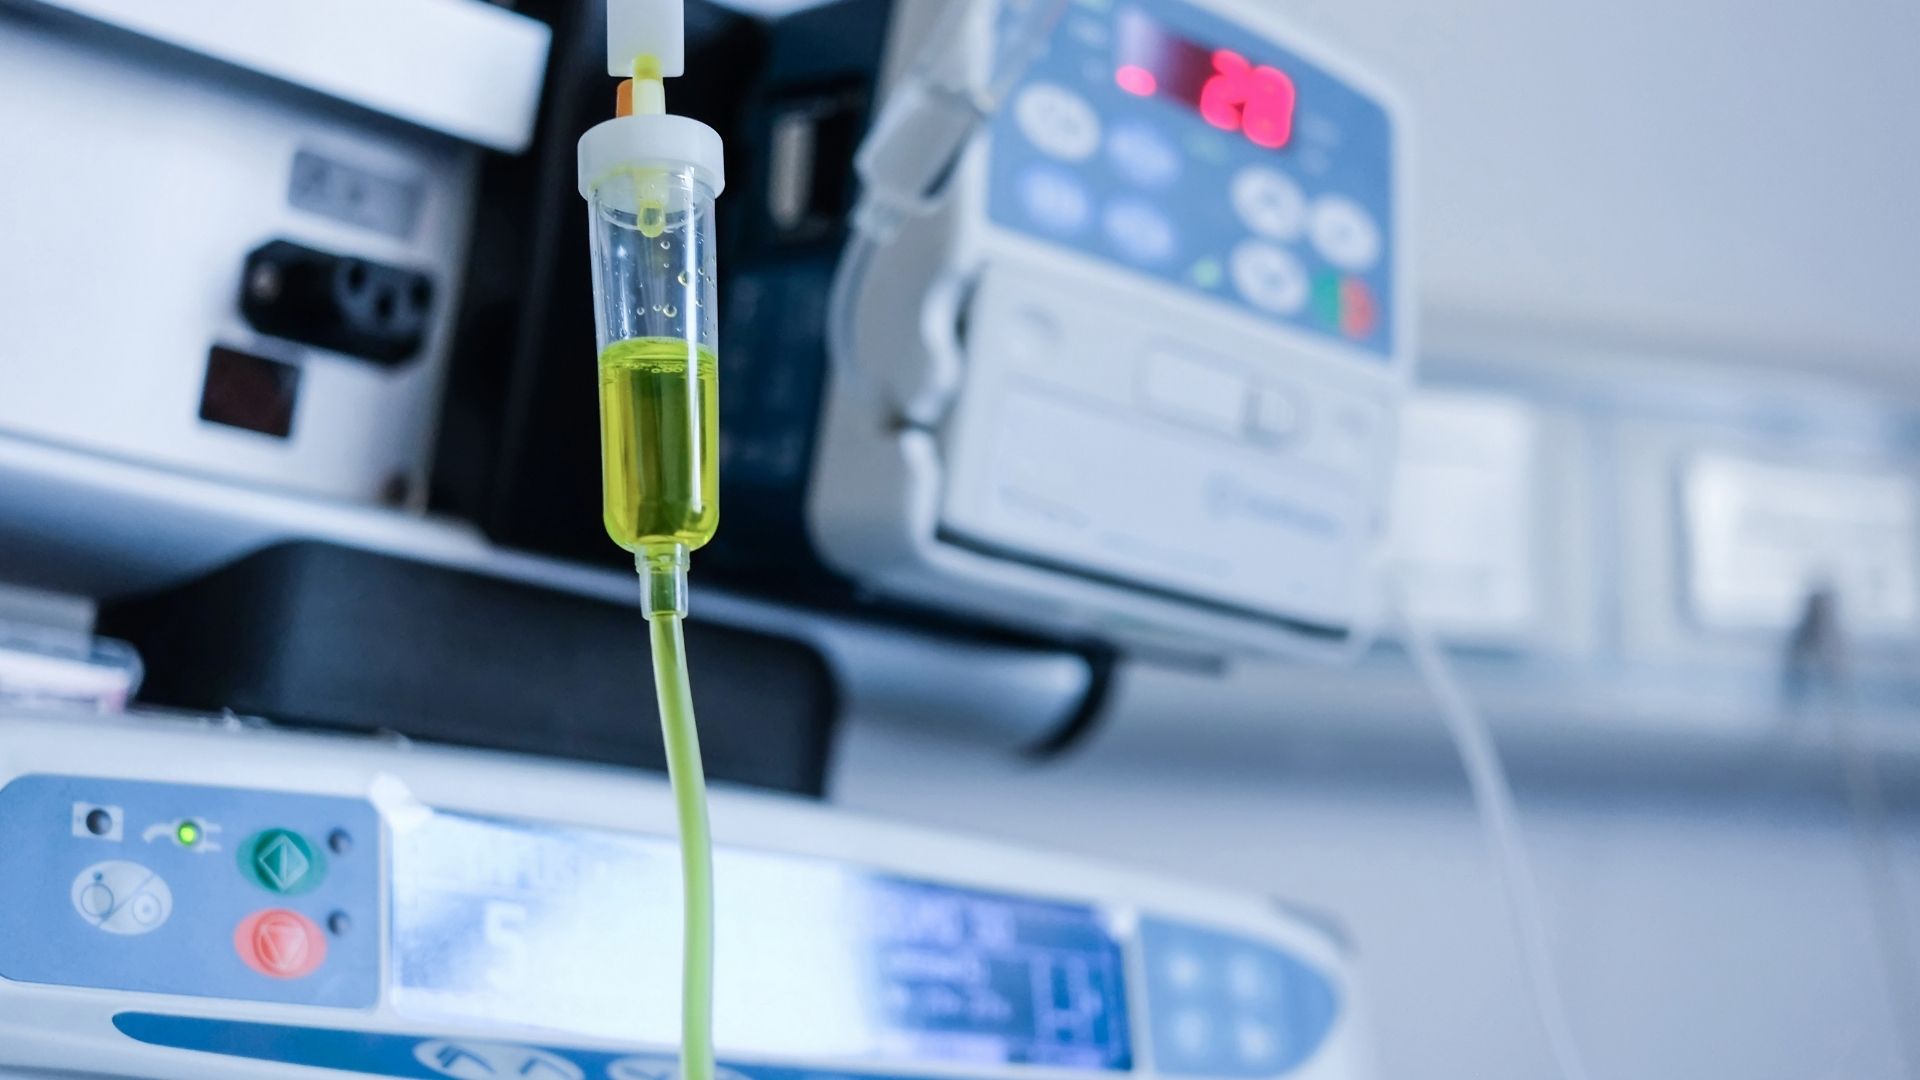 Como a infusão terapêutica pode auxiliar no resultado do seu tratamento?